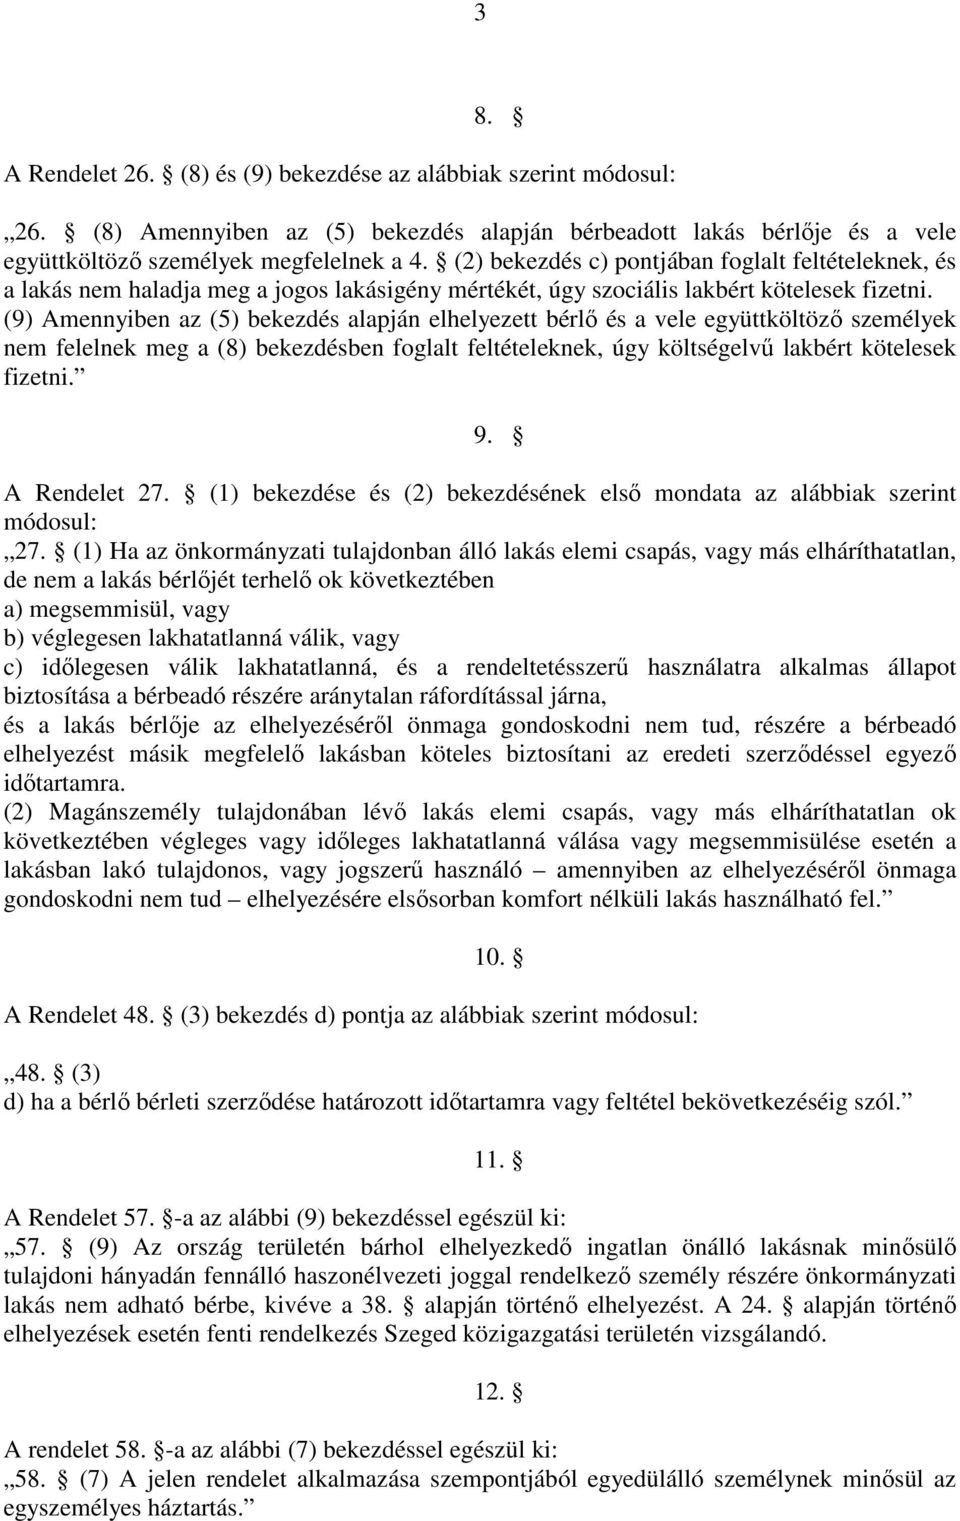 (9) Amennyiben az (5) bekezdés alapján elhelyezett bérlı és a vele együttköltözı személyek nem felelnek meg a (8) bekezdésben foglalt feltételeknek, úgy költségelvő lakbért kötelesek fizetni. 9.